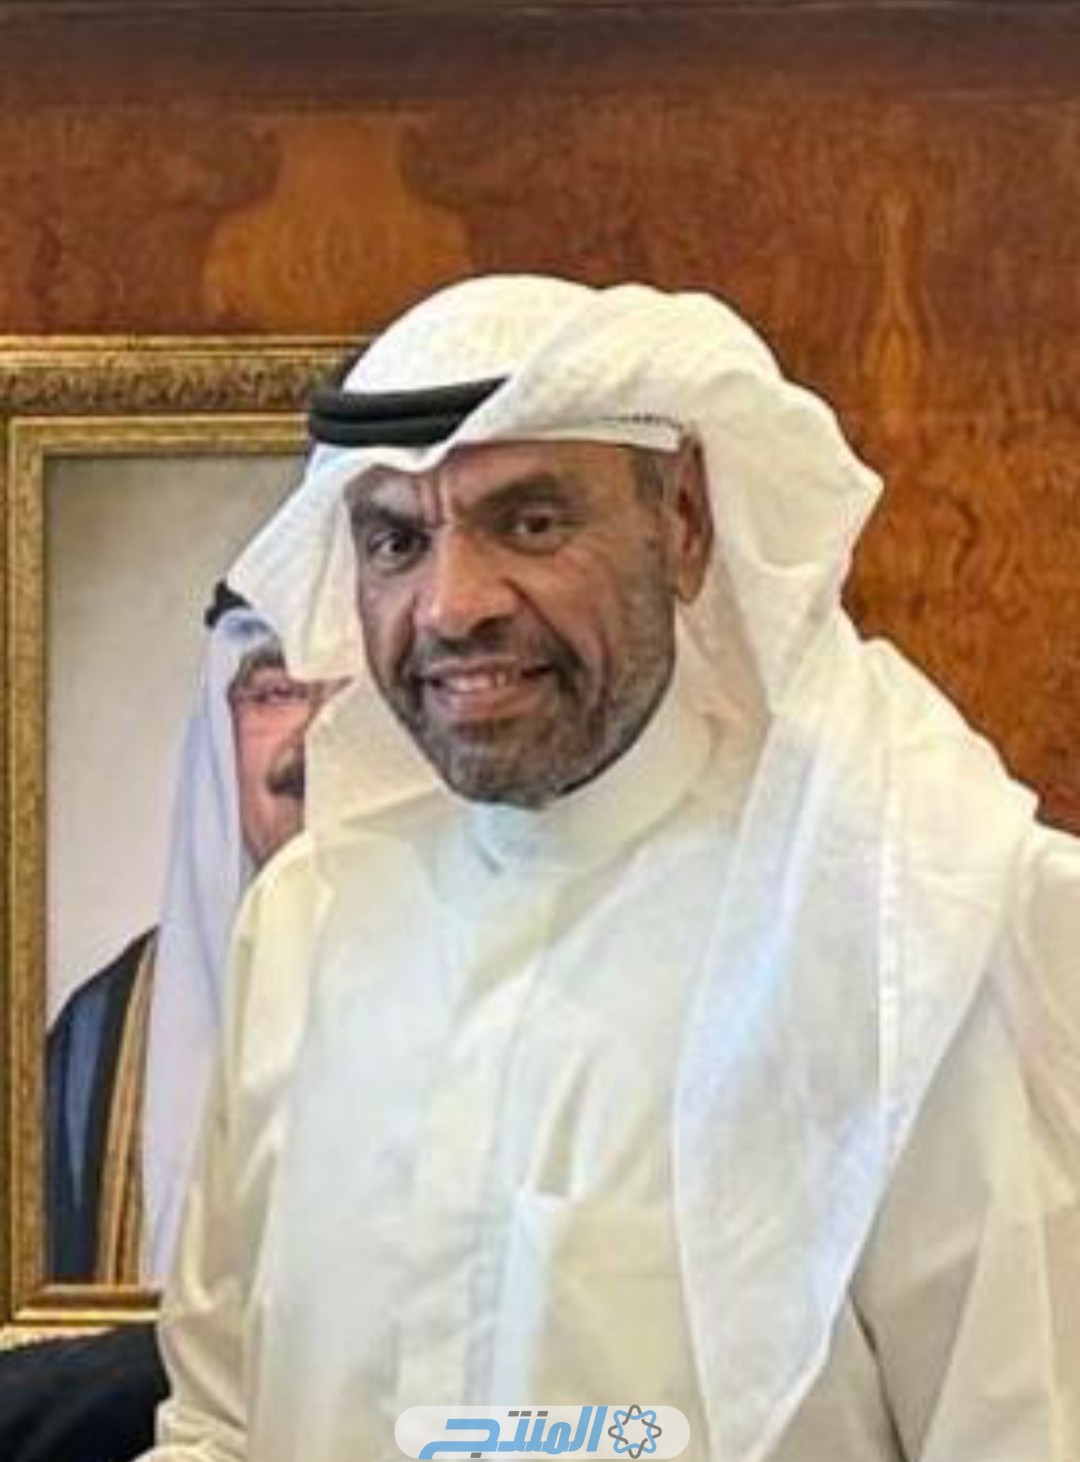 عبد الله علي عبد الله اليحيا ويكيبيديا؛ من هو وزير الخارجية في الكويت